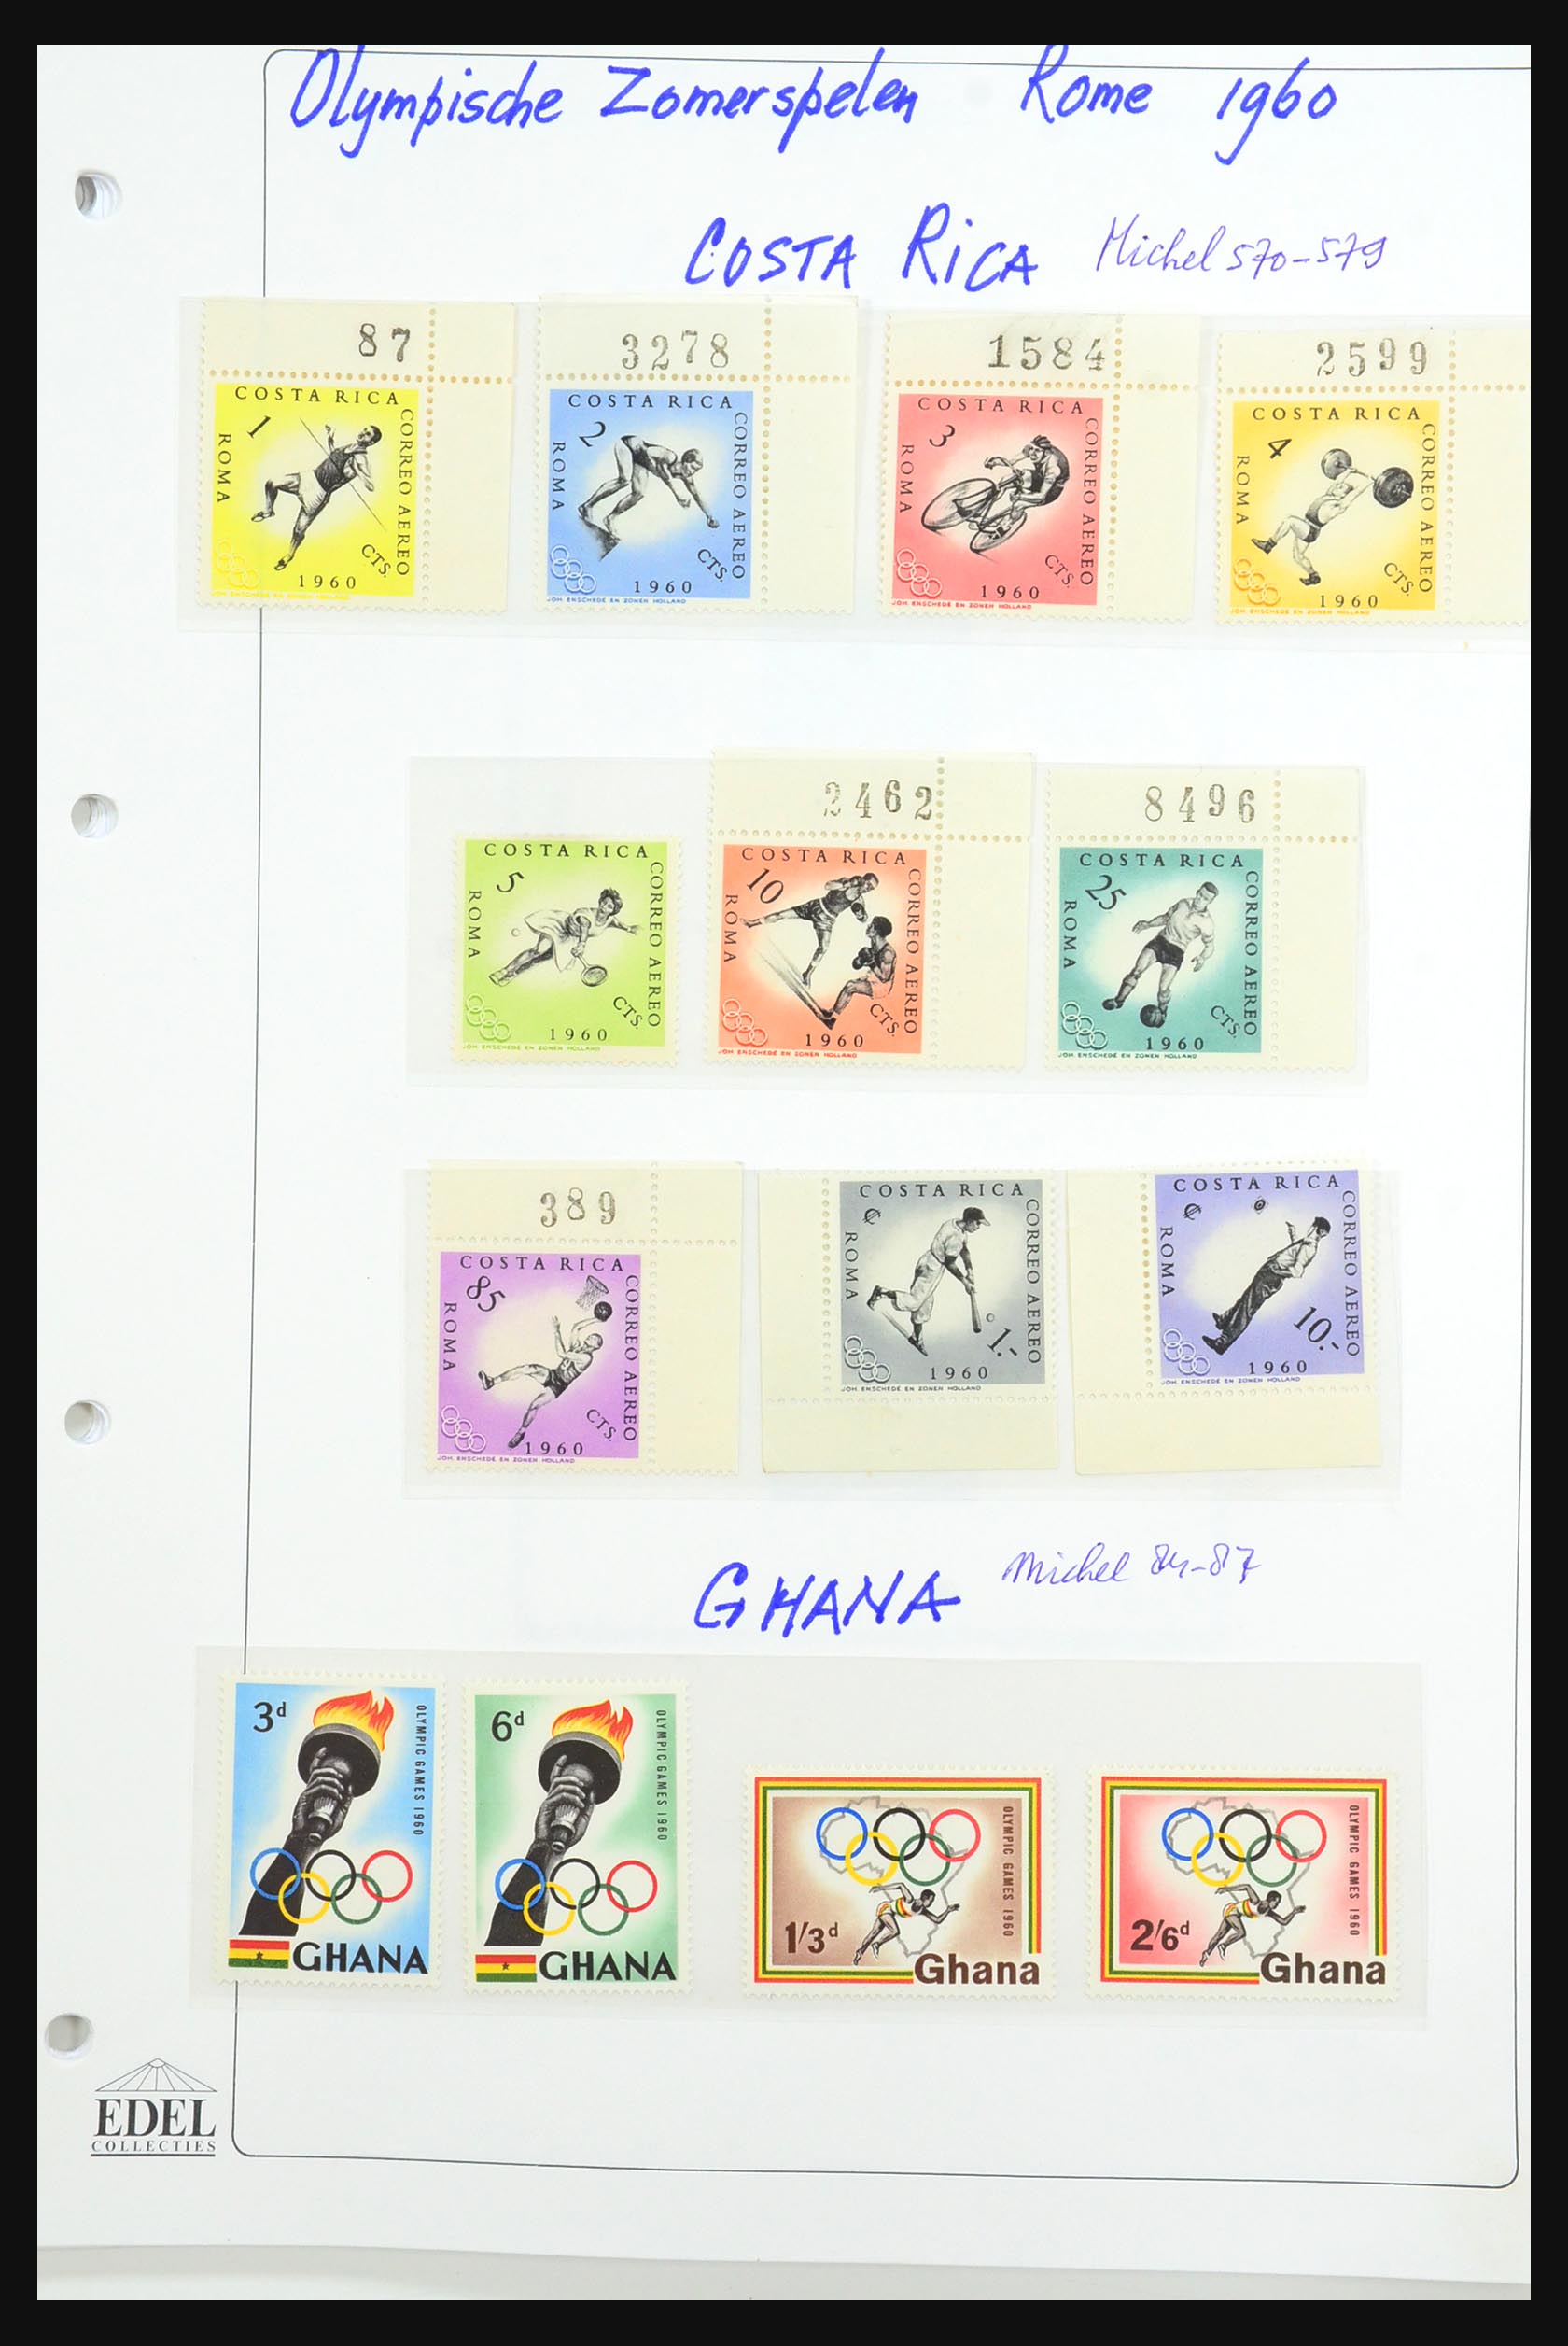 31518 0094 - 31518 Olympische Spelen 1896-1996.